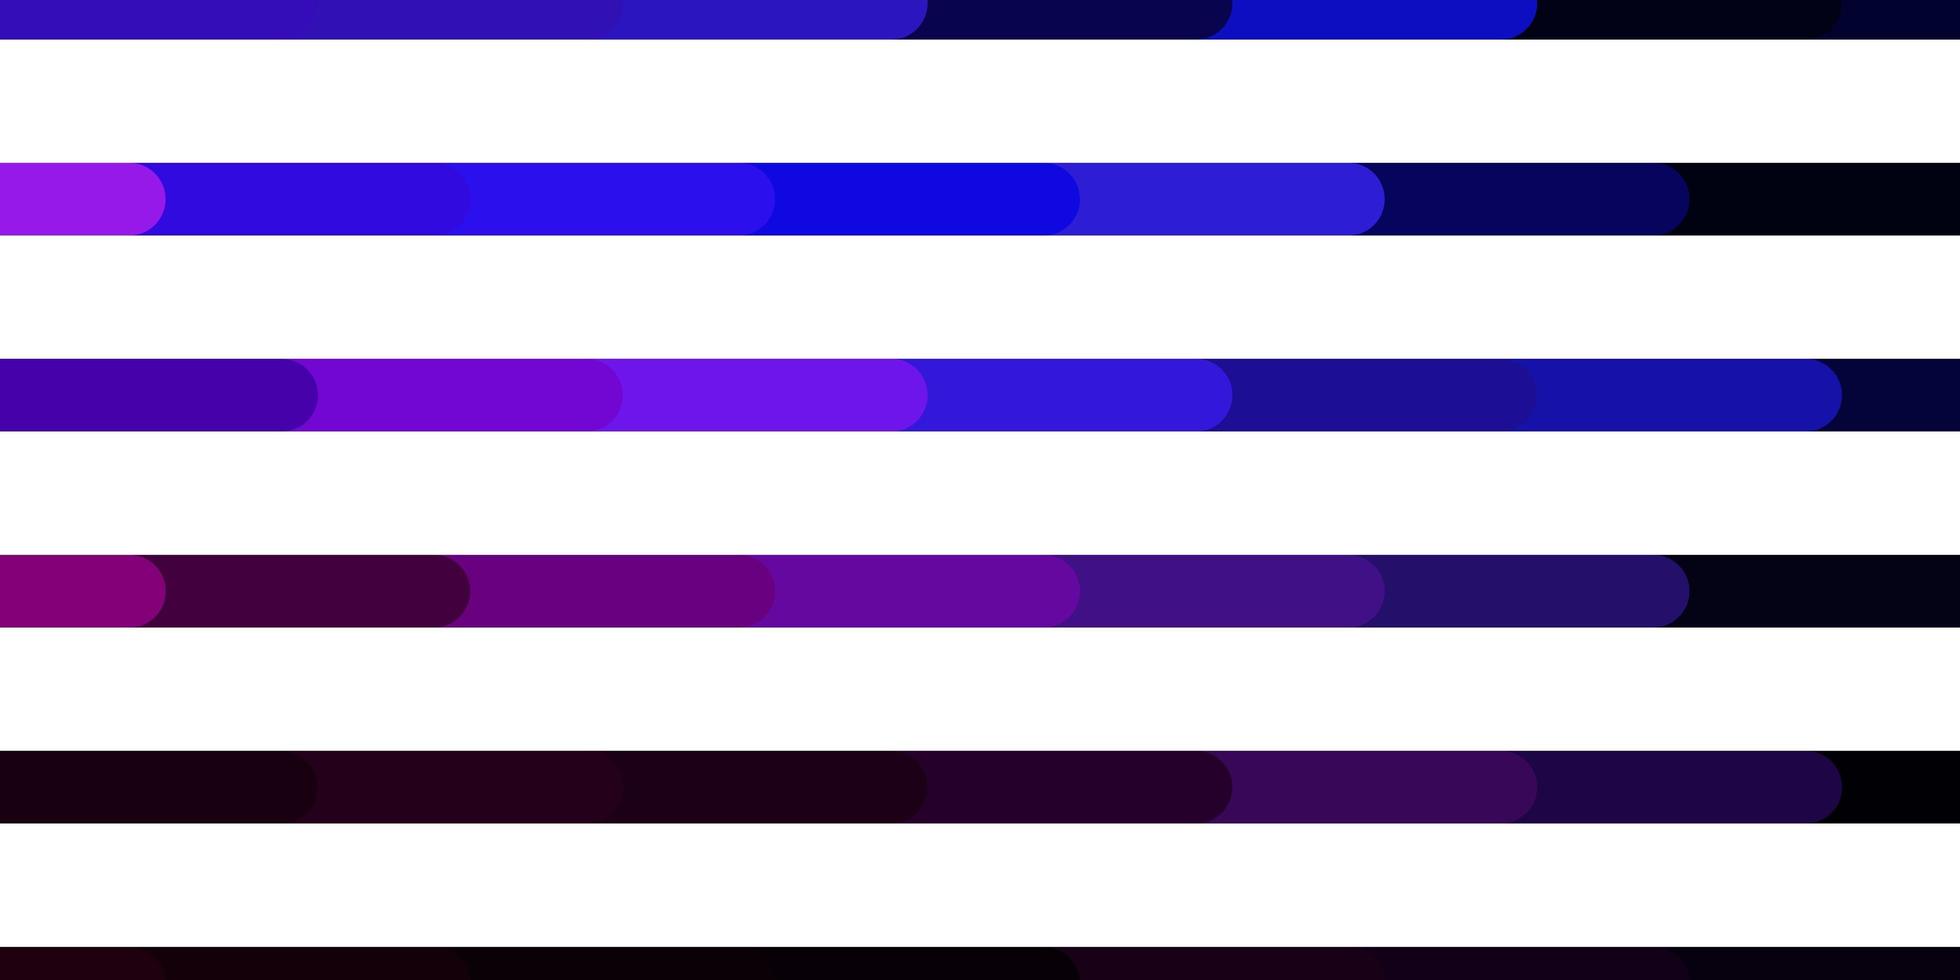 mörkrosa, blå vektormall med linjer. vektor